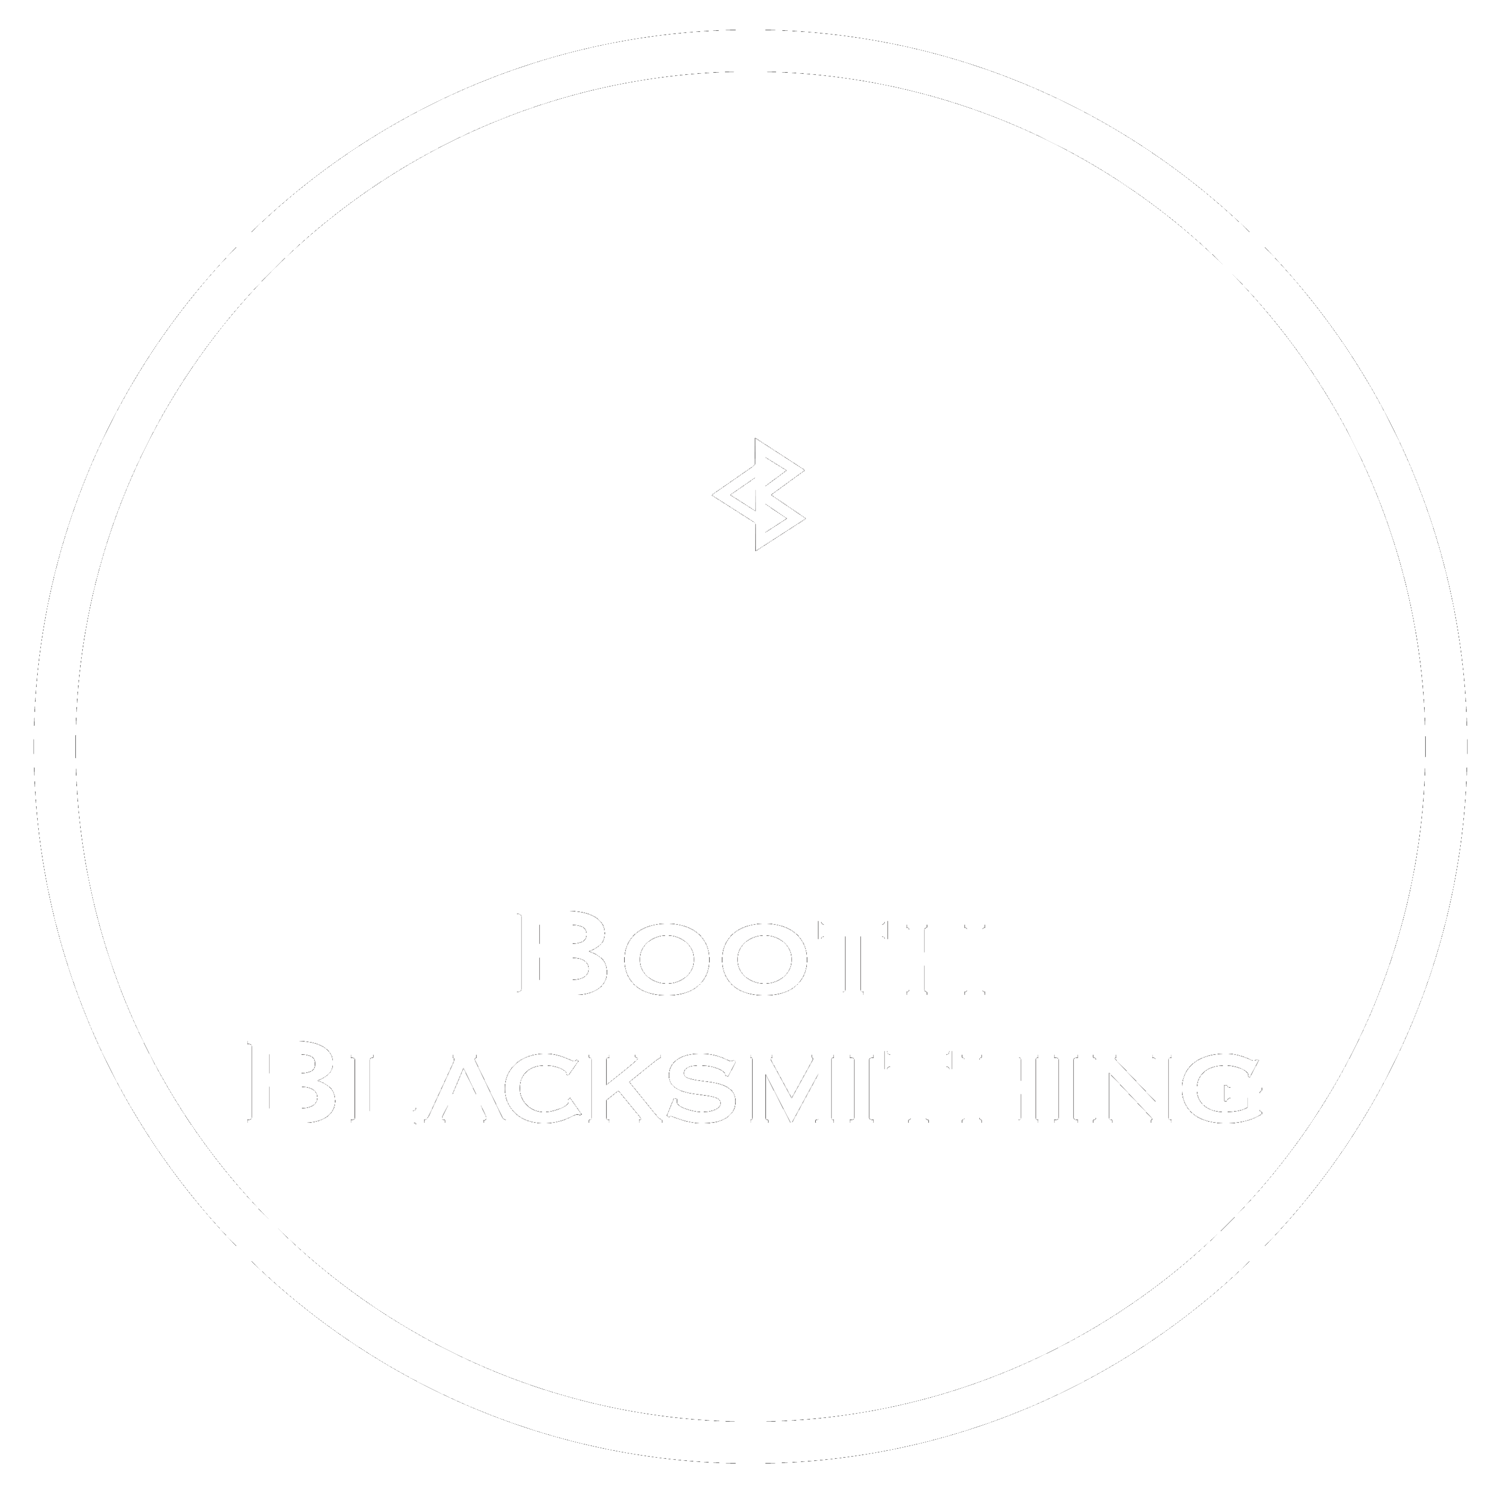 Booth Blacksmithing